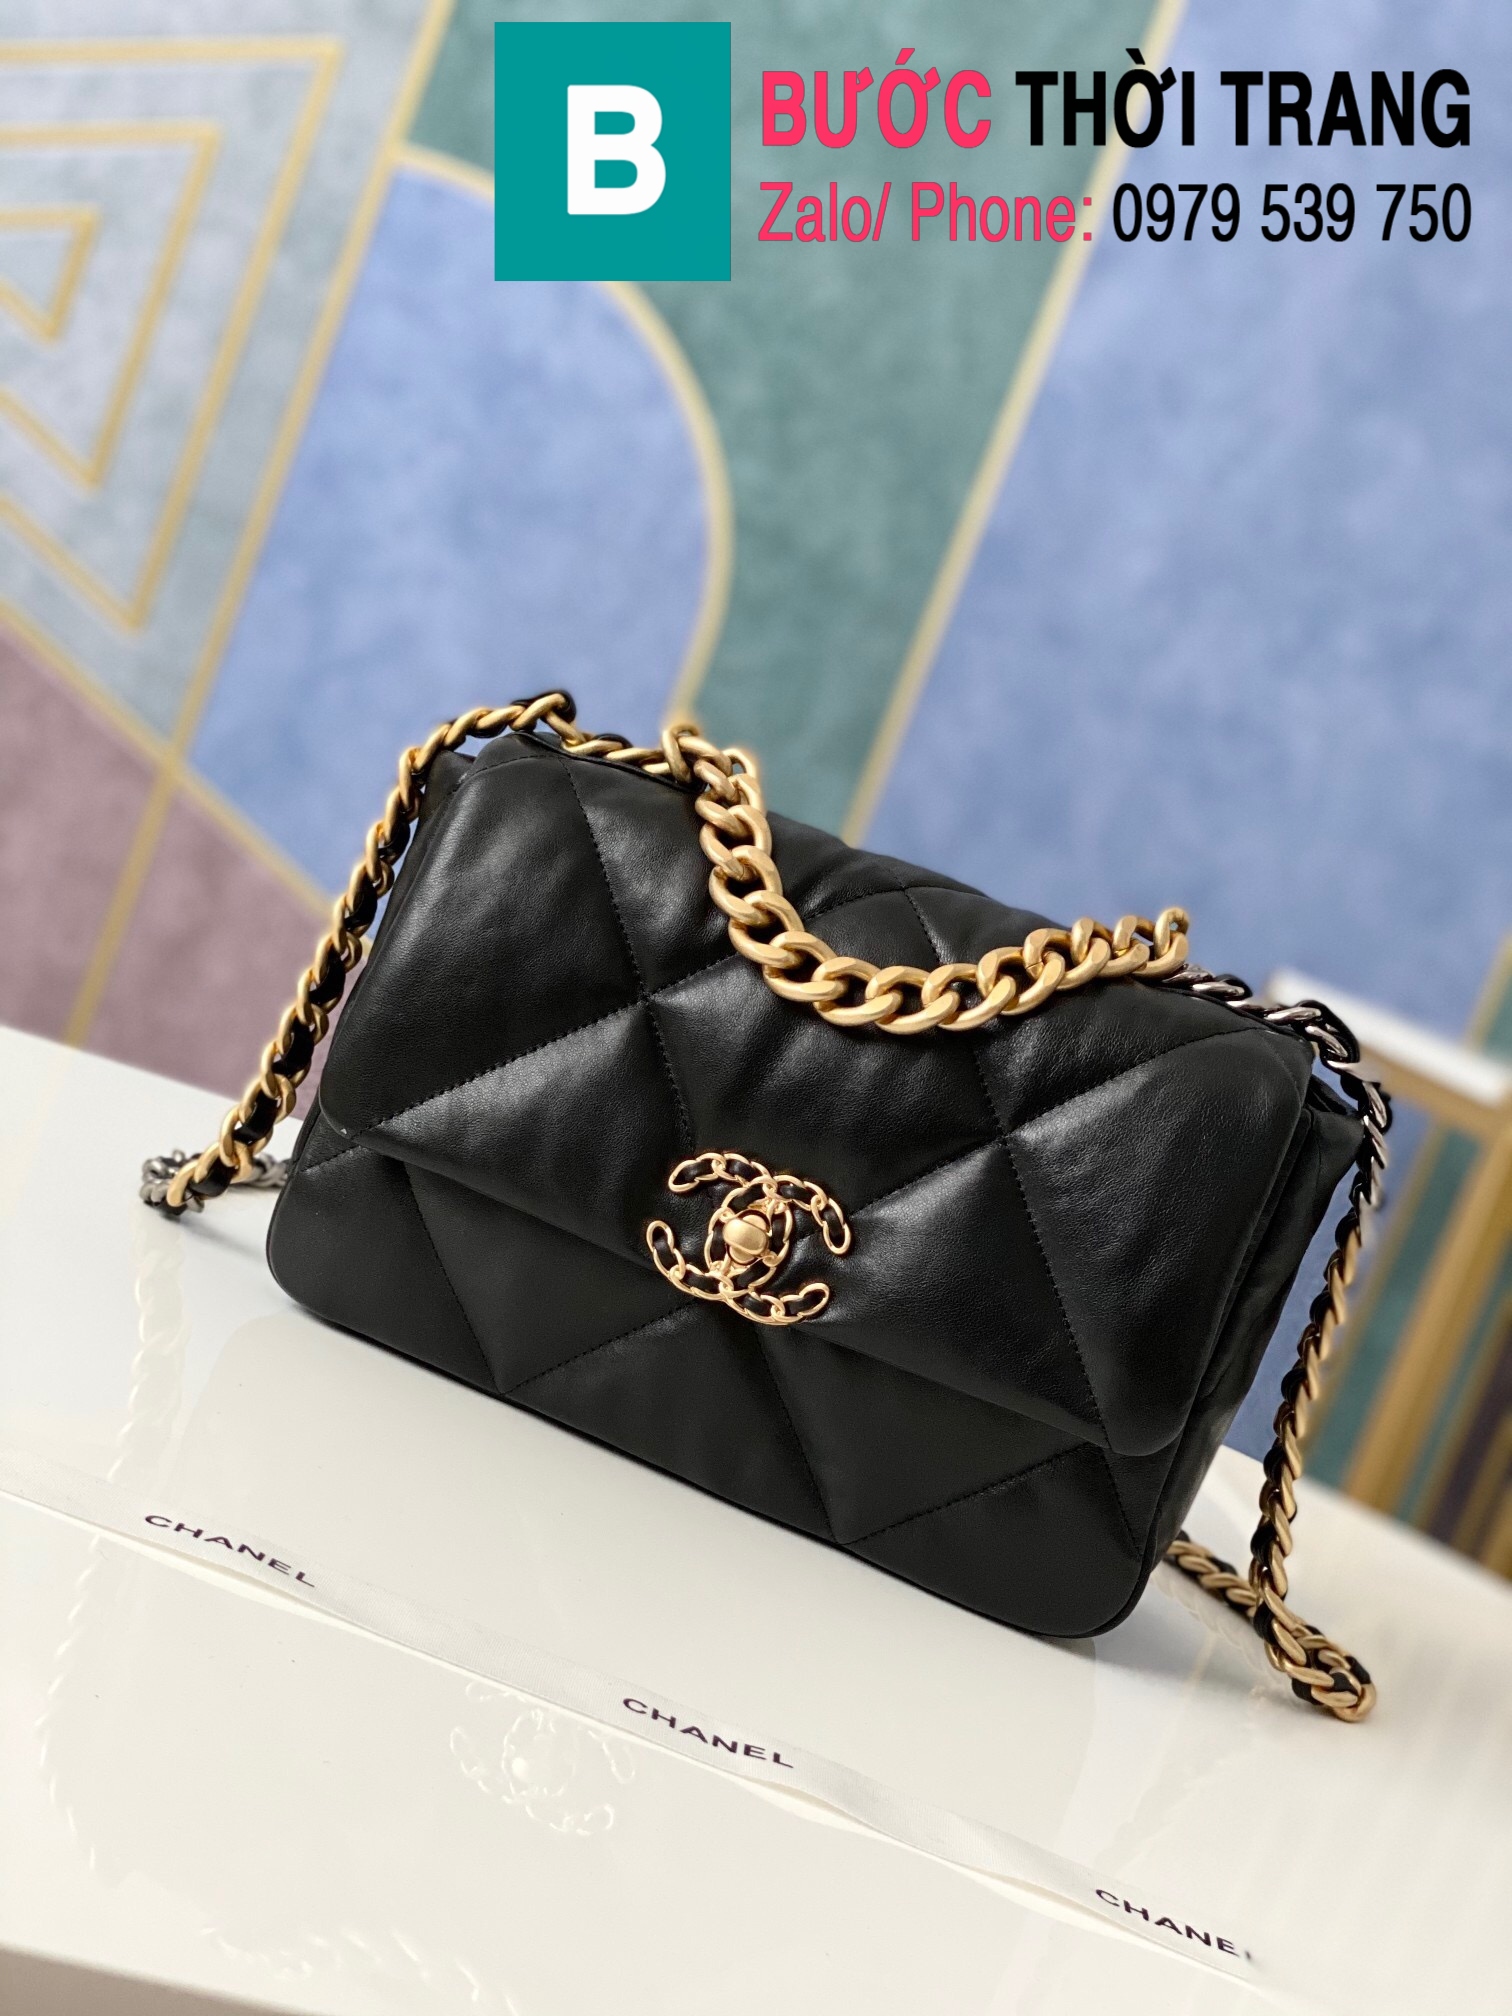 Túi xách Chanel 19 Flap Bag siêu cấp da bê màu đen size 26 cm  1160  Túi  xách cao cấp những mẫu túi siêu cấp like authentic cực đẹp